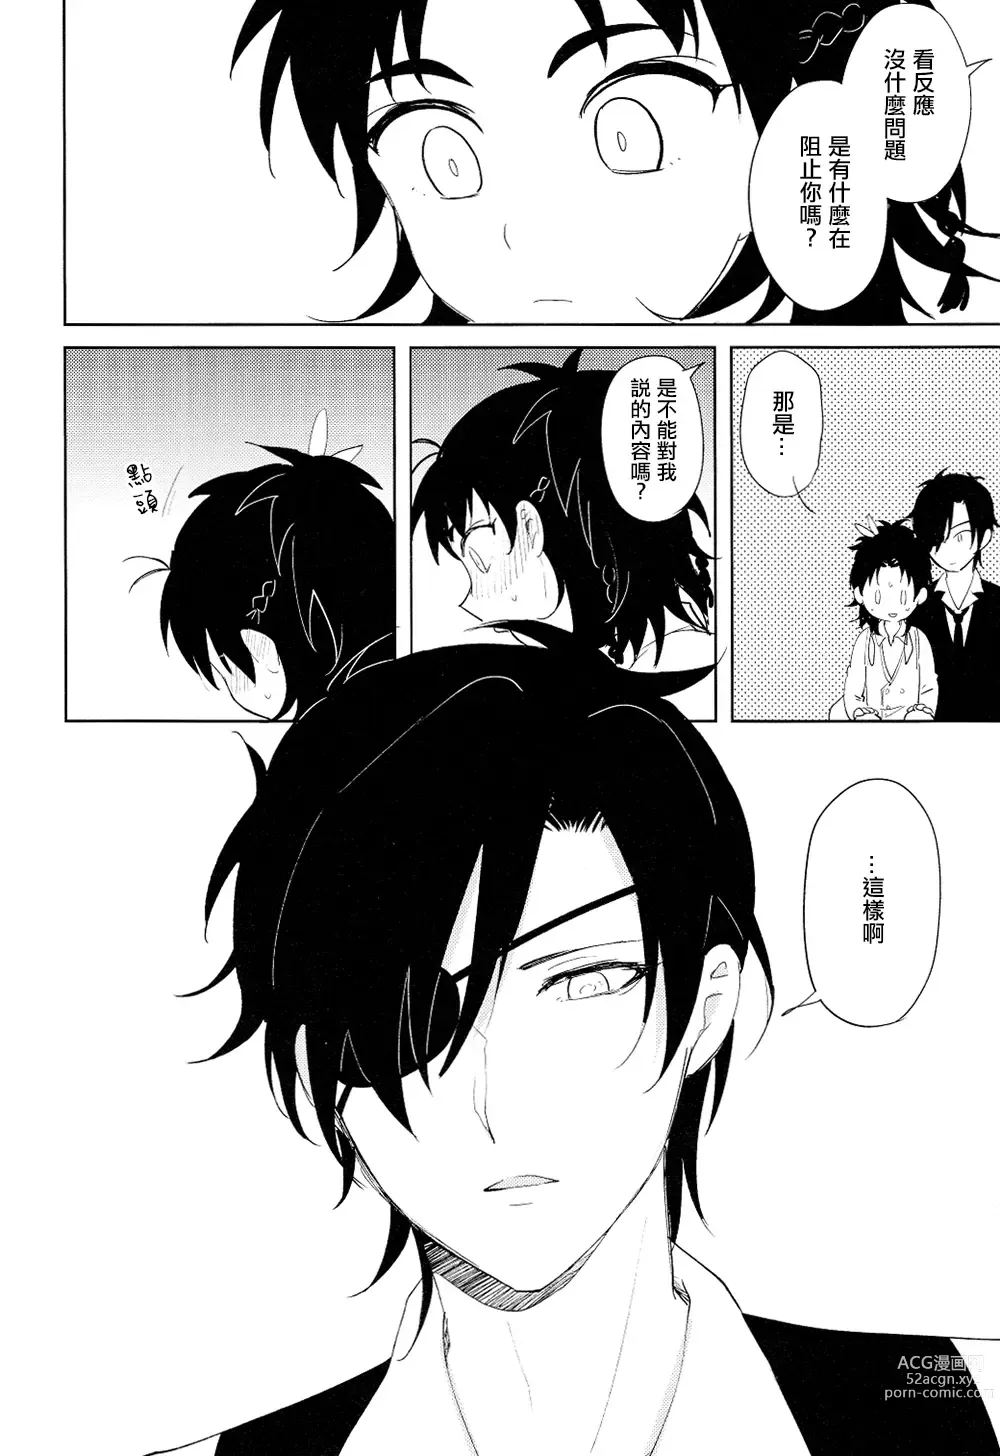 Page 9 of doujinshi 从一个人变成两个人